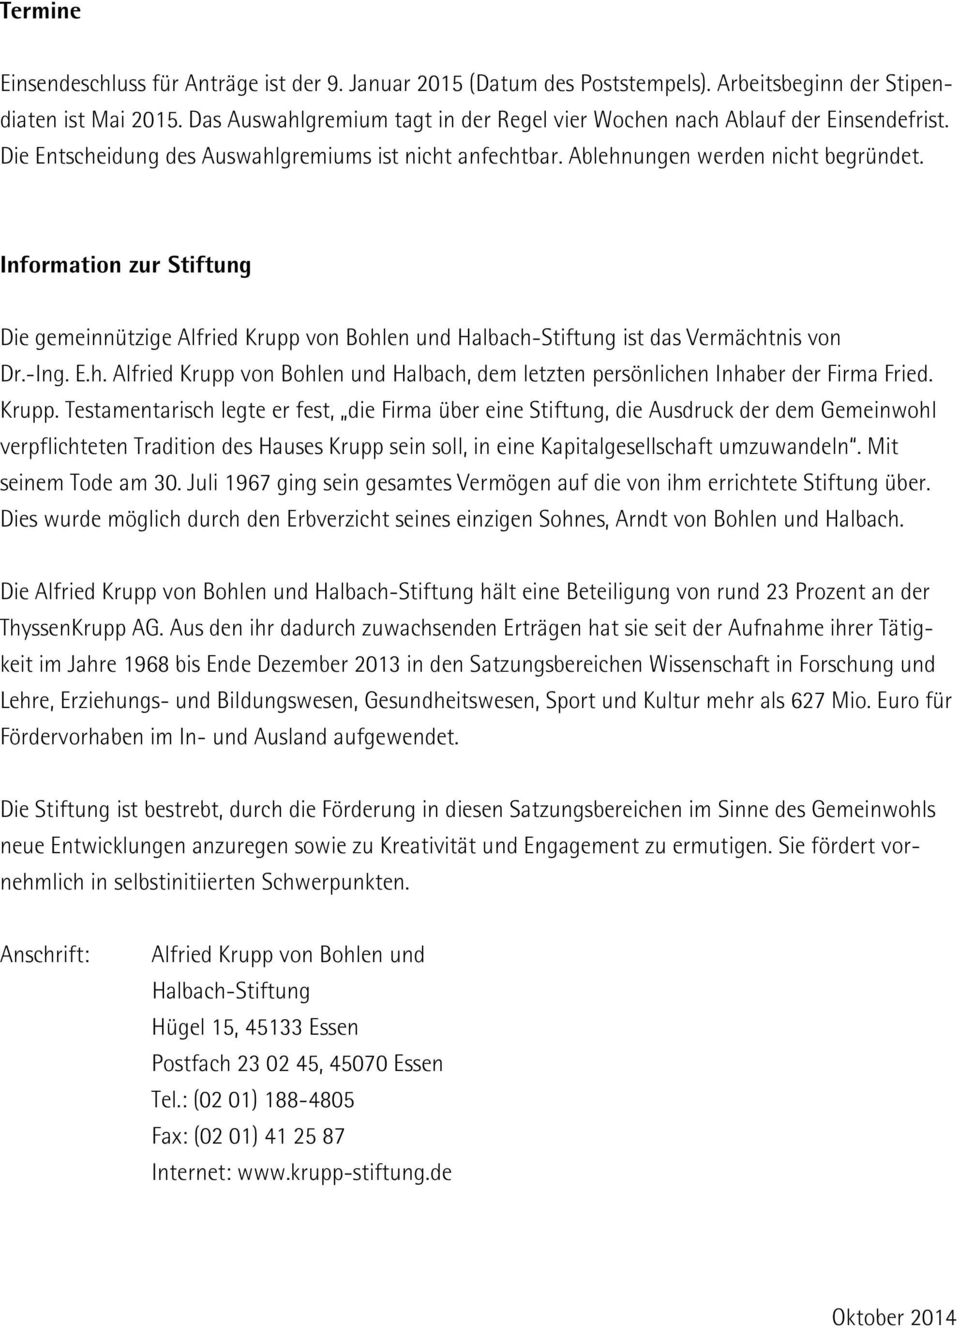 Information zur Stiftung Die gemeinnützige Alfried Krupp von Bohlen und Halbach-Stiftung ist das Vermächtnis von Dr.-Ing. E.h. Alfried Krupp von Bohlen und Halbach, dem letzten persönlichen Inhaber der Firma Fried.